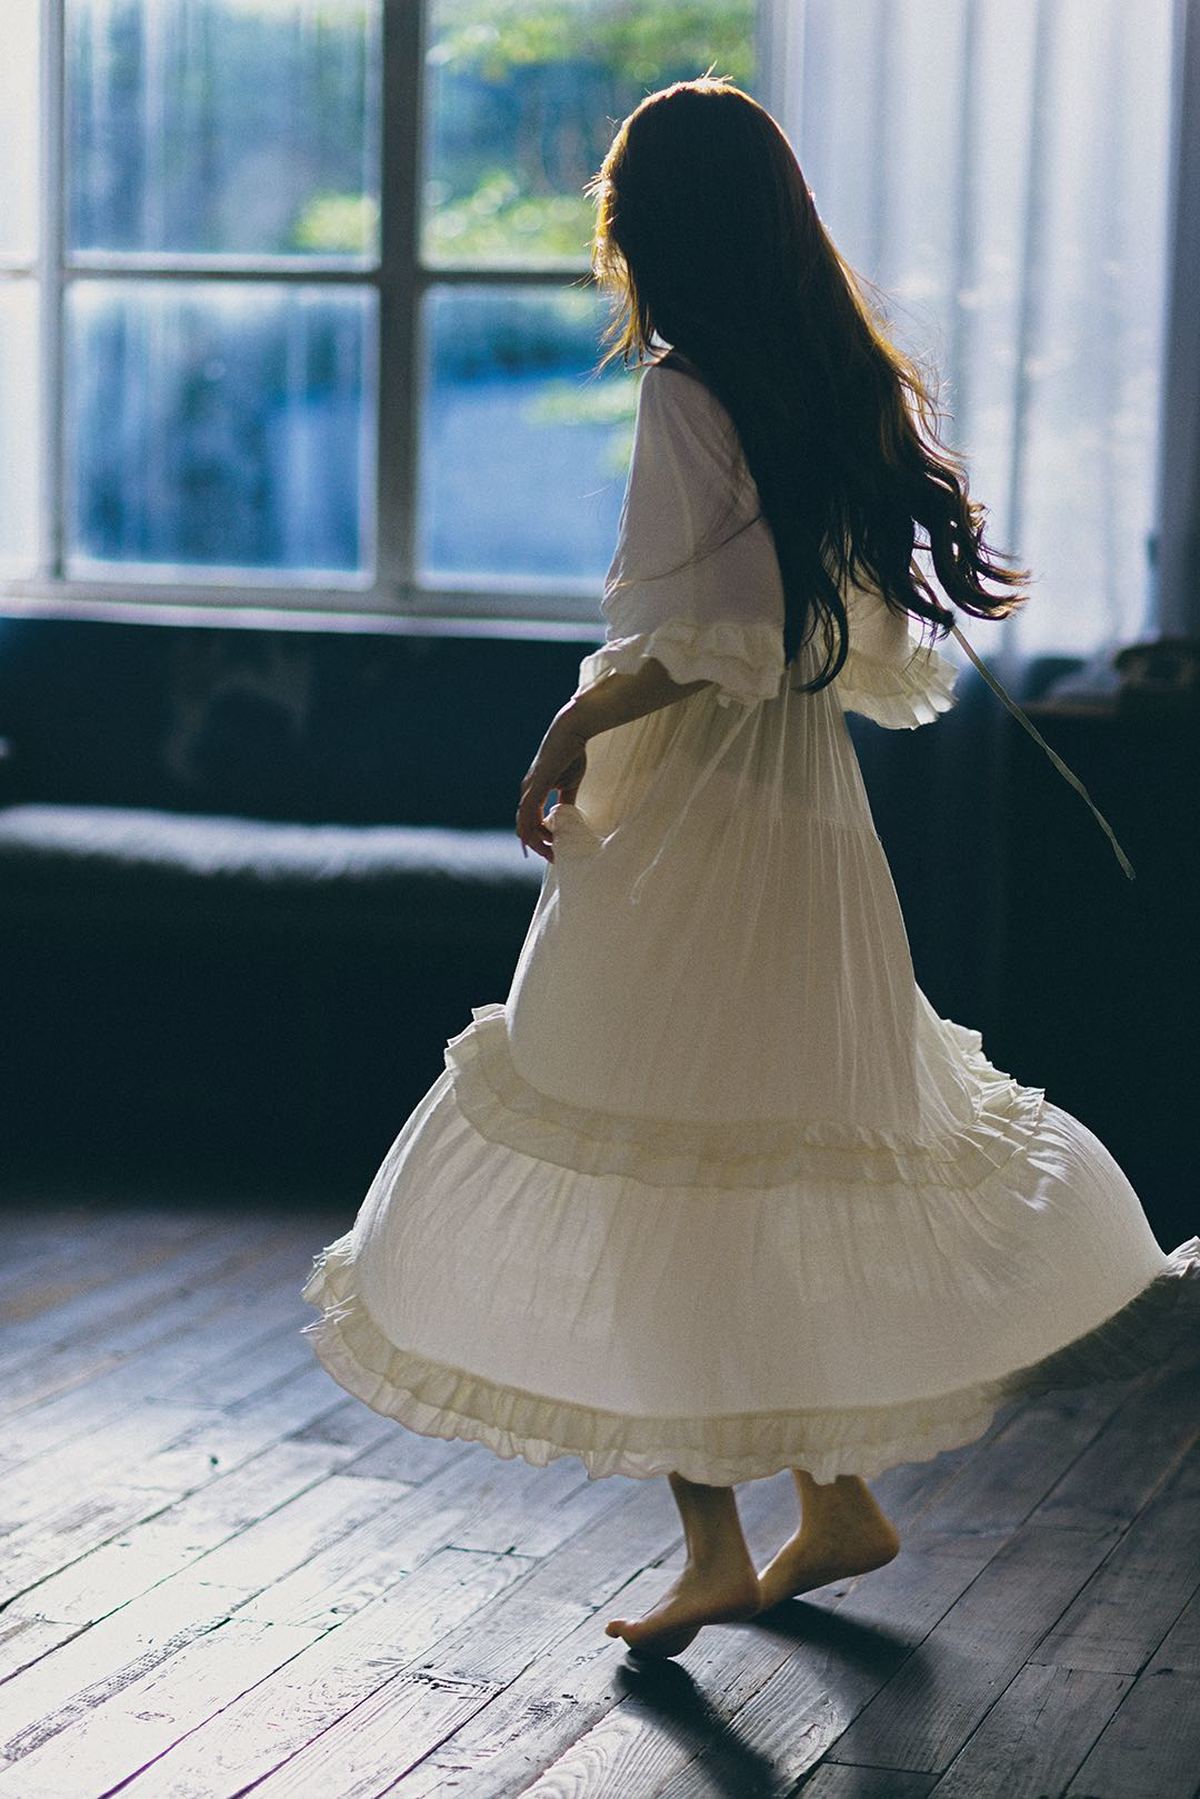 一个穿着白色连衣裙的年轻女子走进了一个光线昏暗的房间。